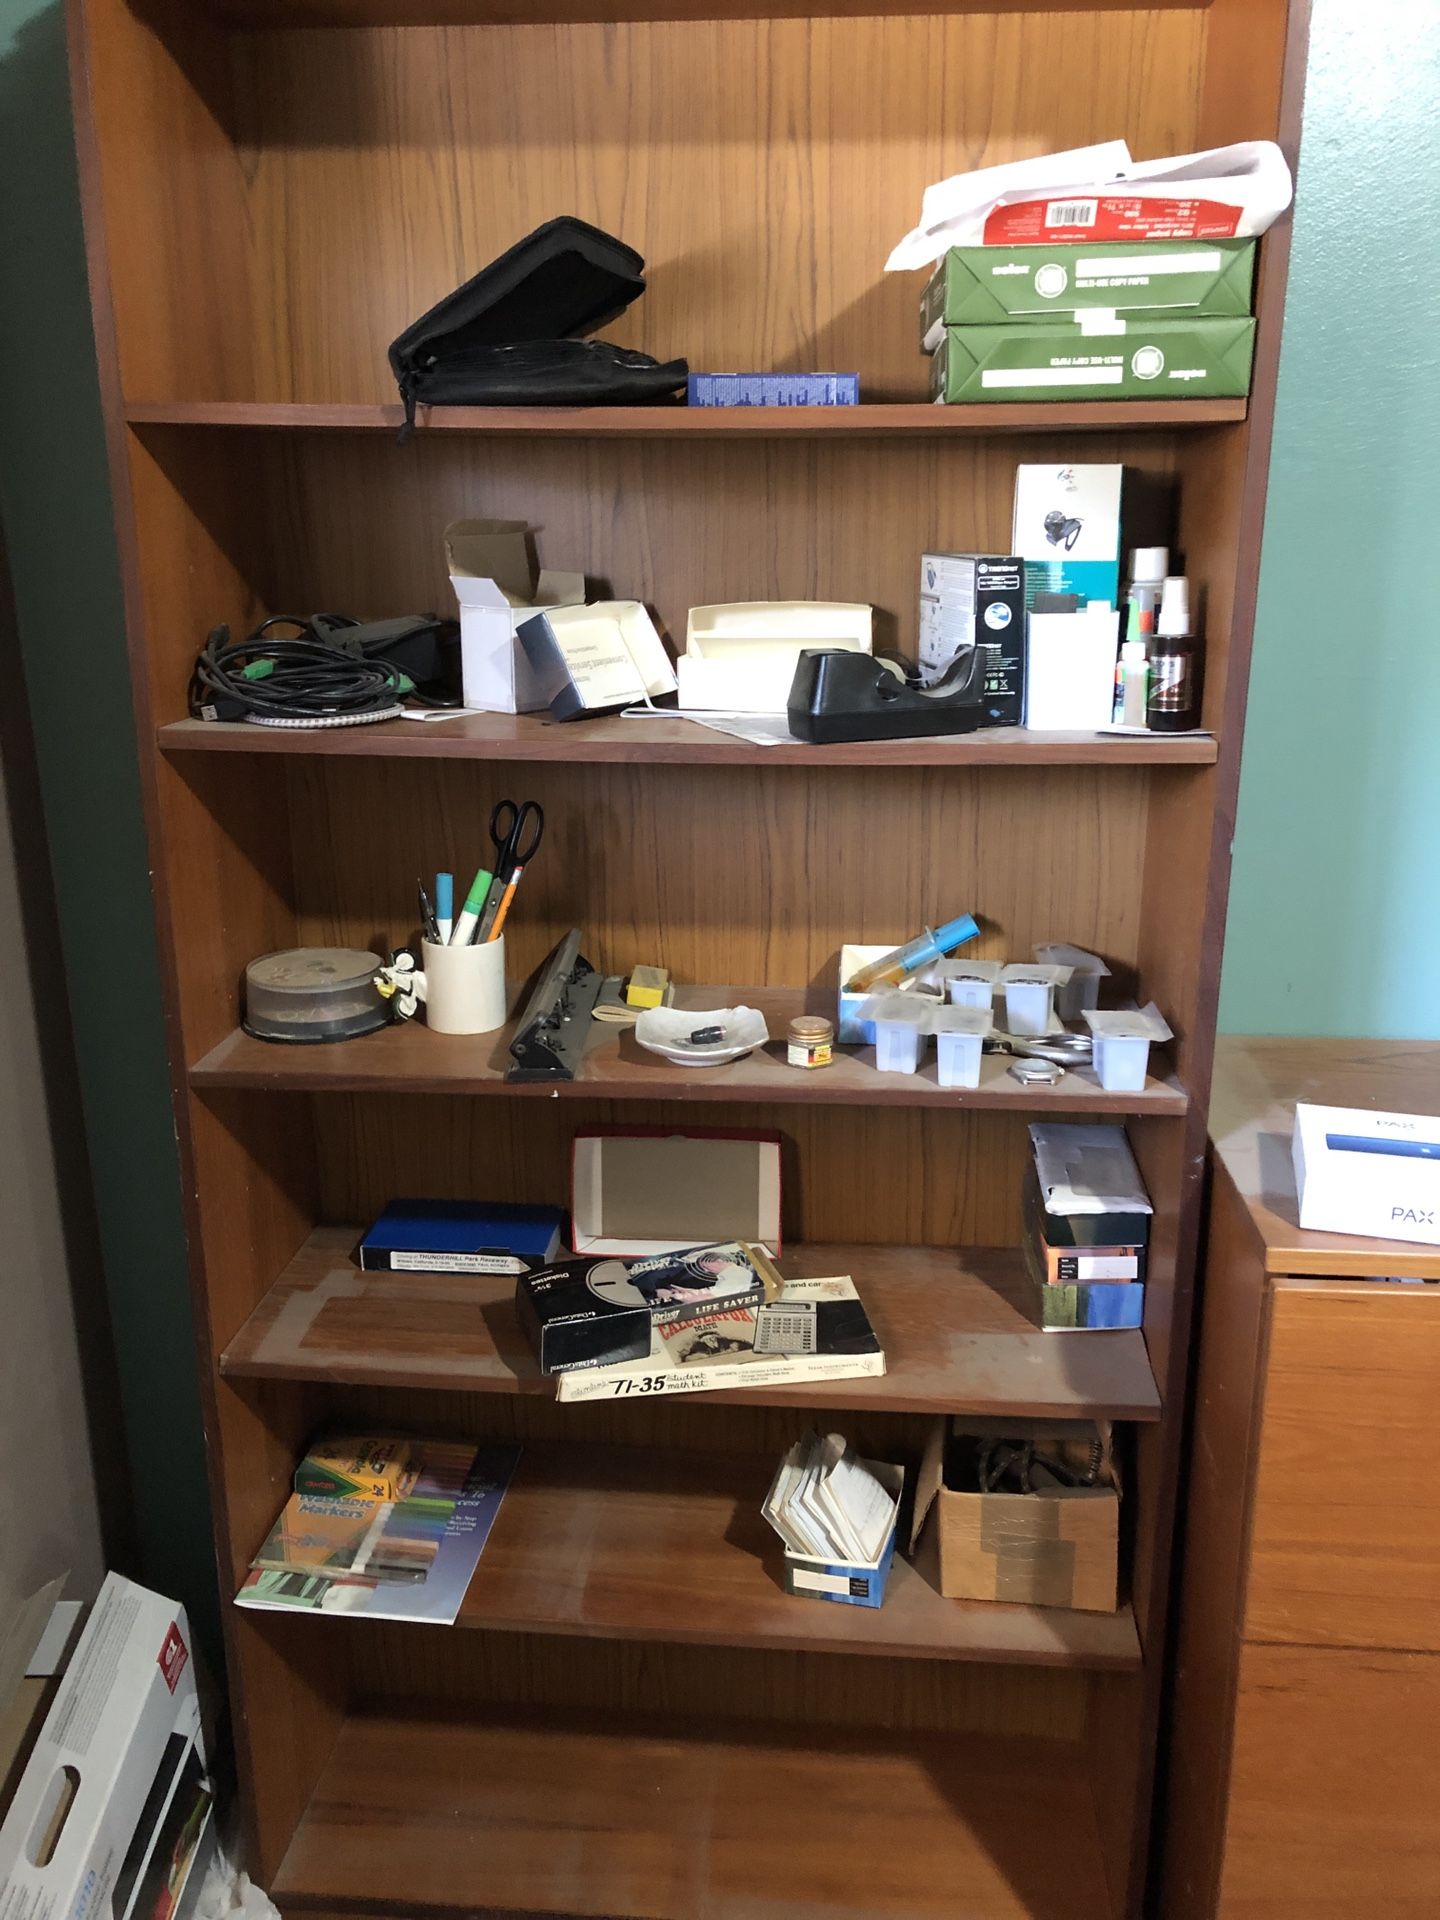 Free bookshelves, desk, filing cabinet, tv stand